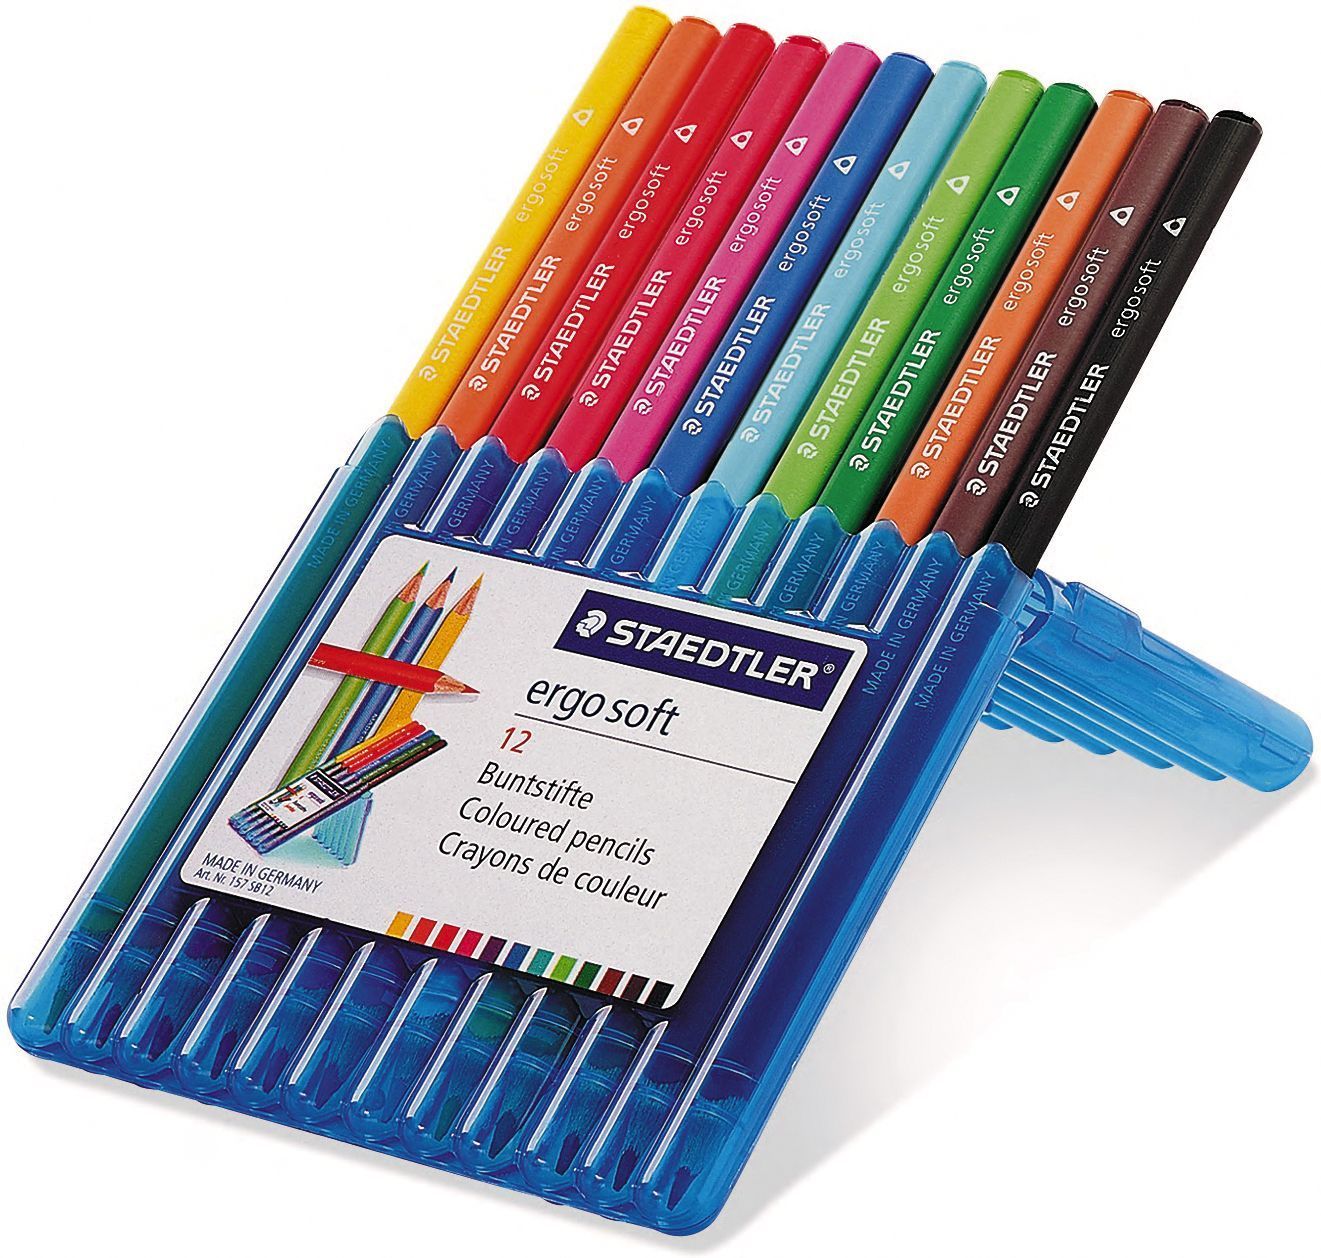 Staedtler Pencil Coloured Ergosoft Aquarell 12 Pack